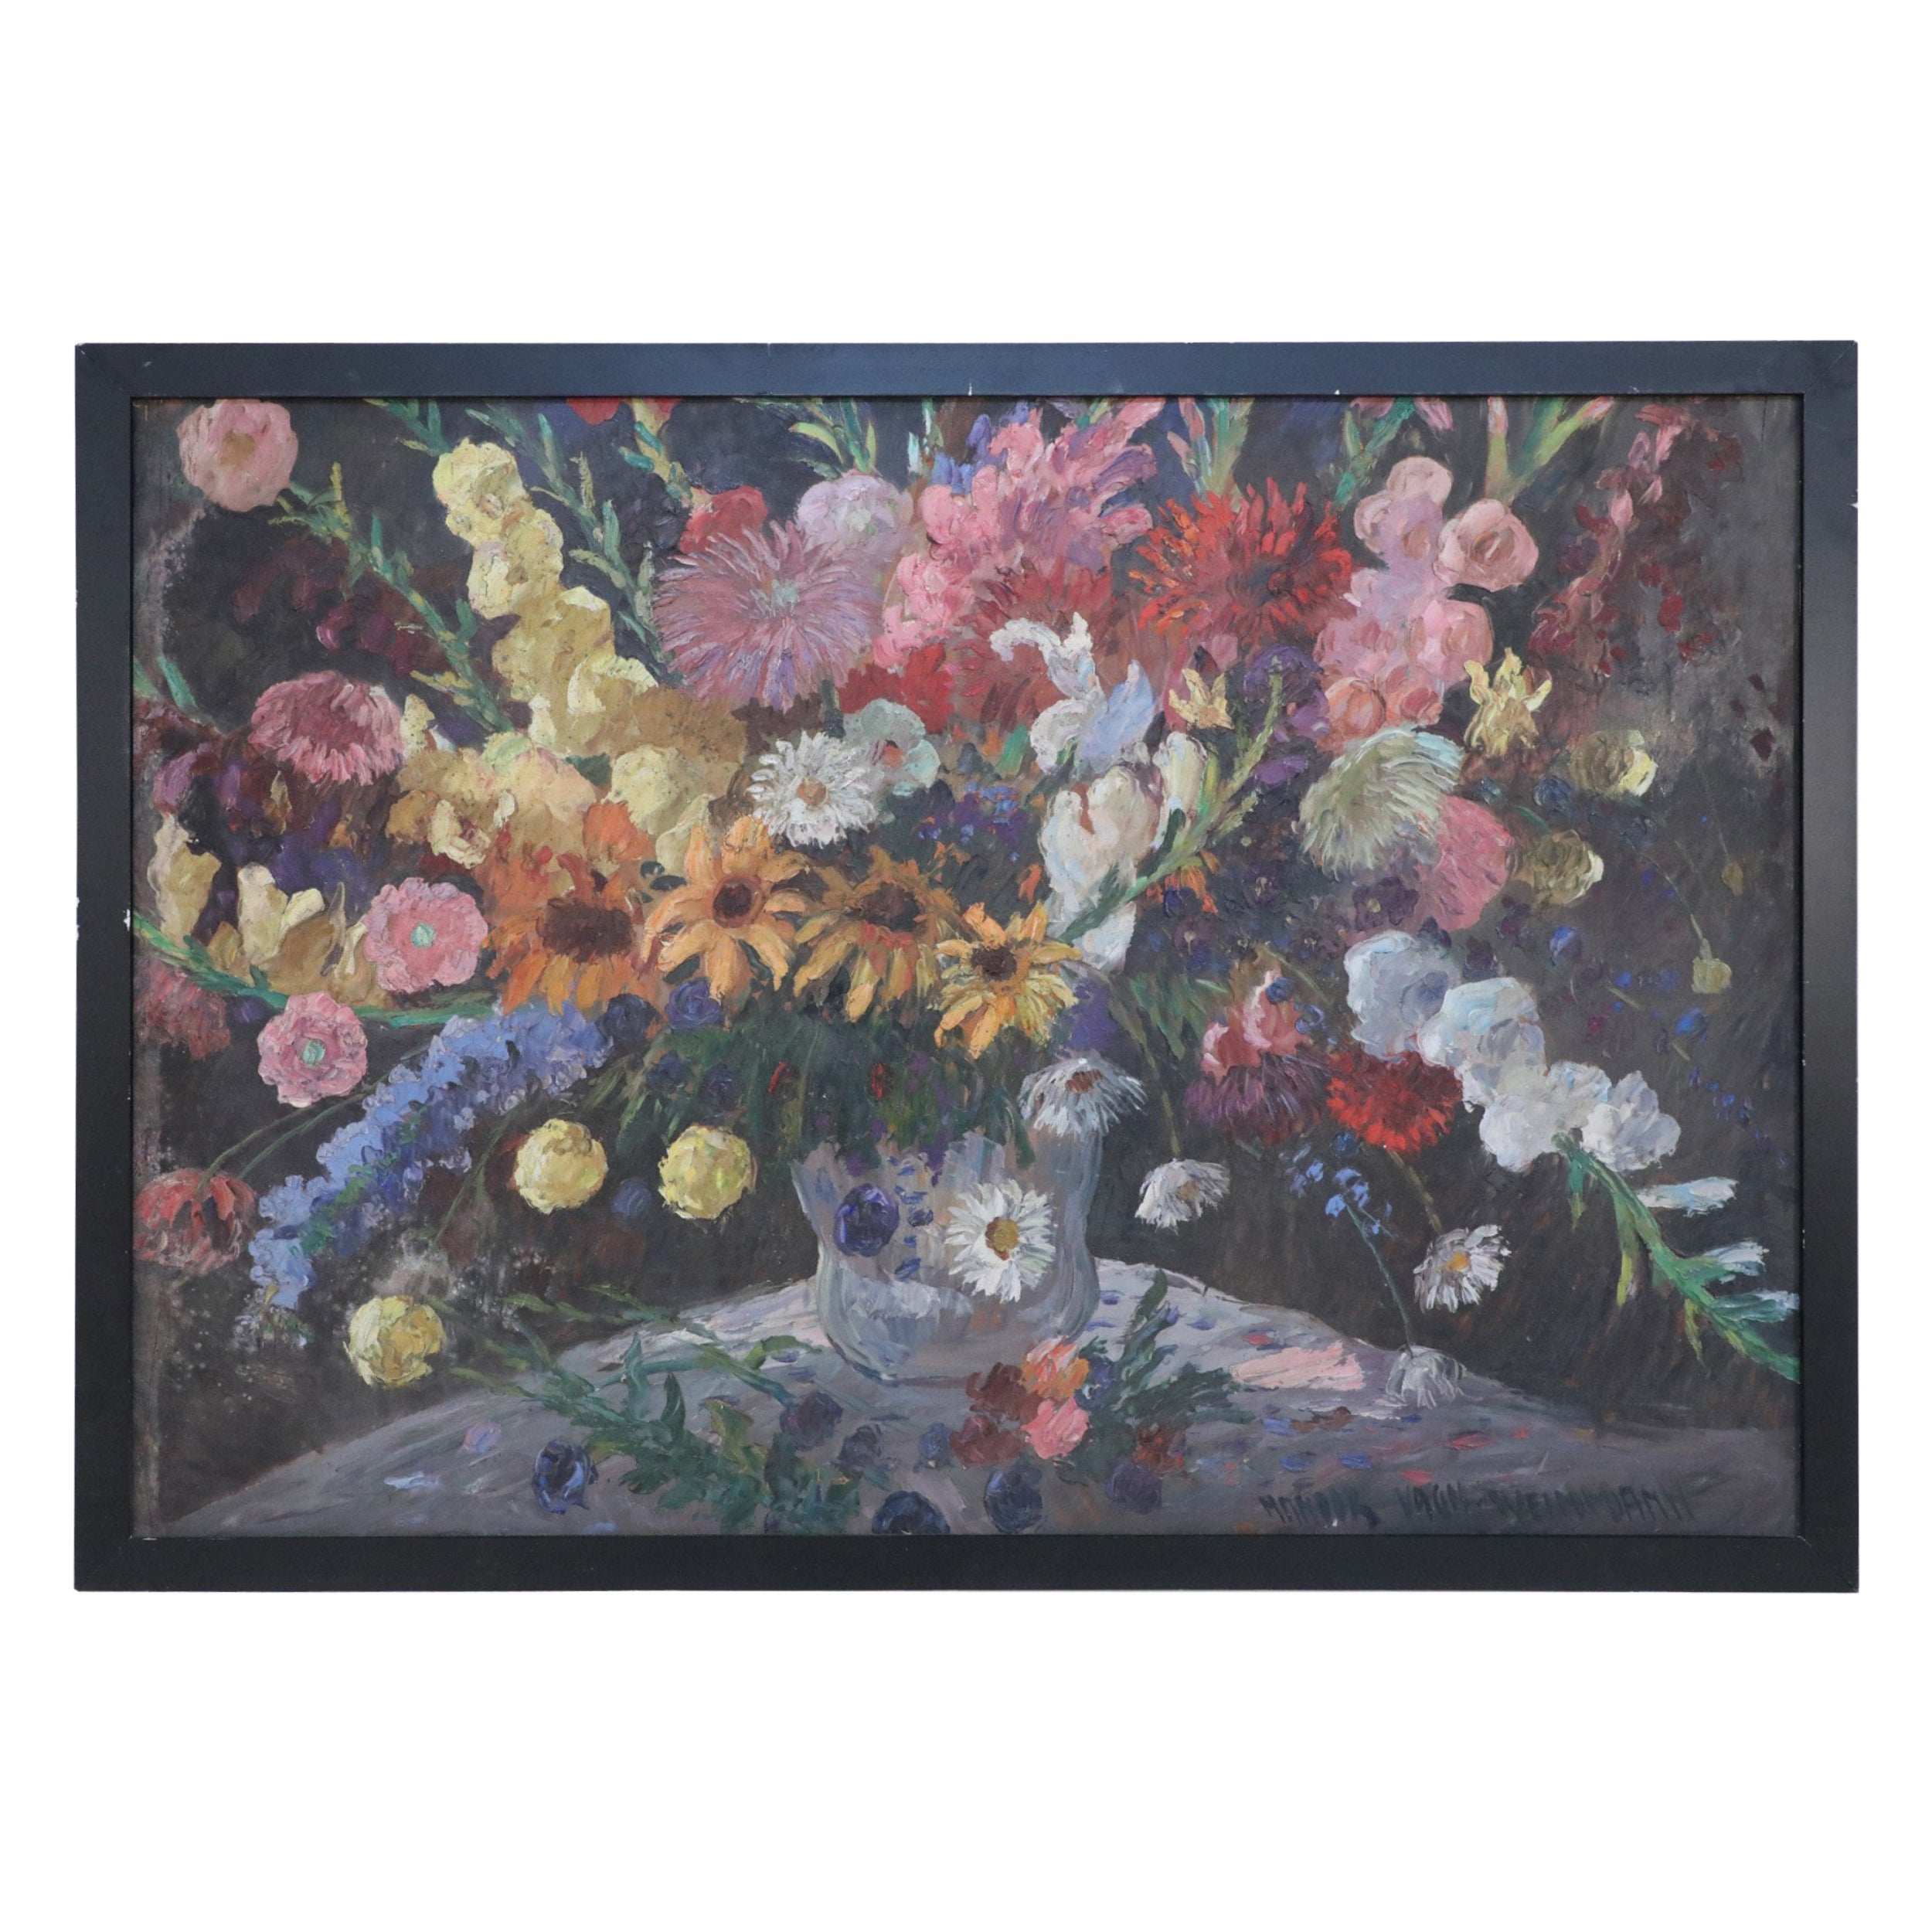 Framed Oil Still Life of an Abundant Wildflower Bouquet